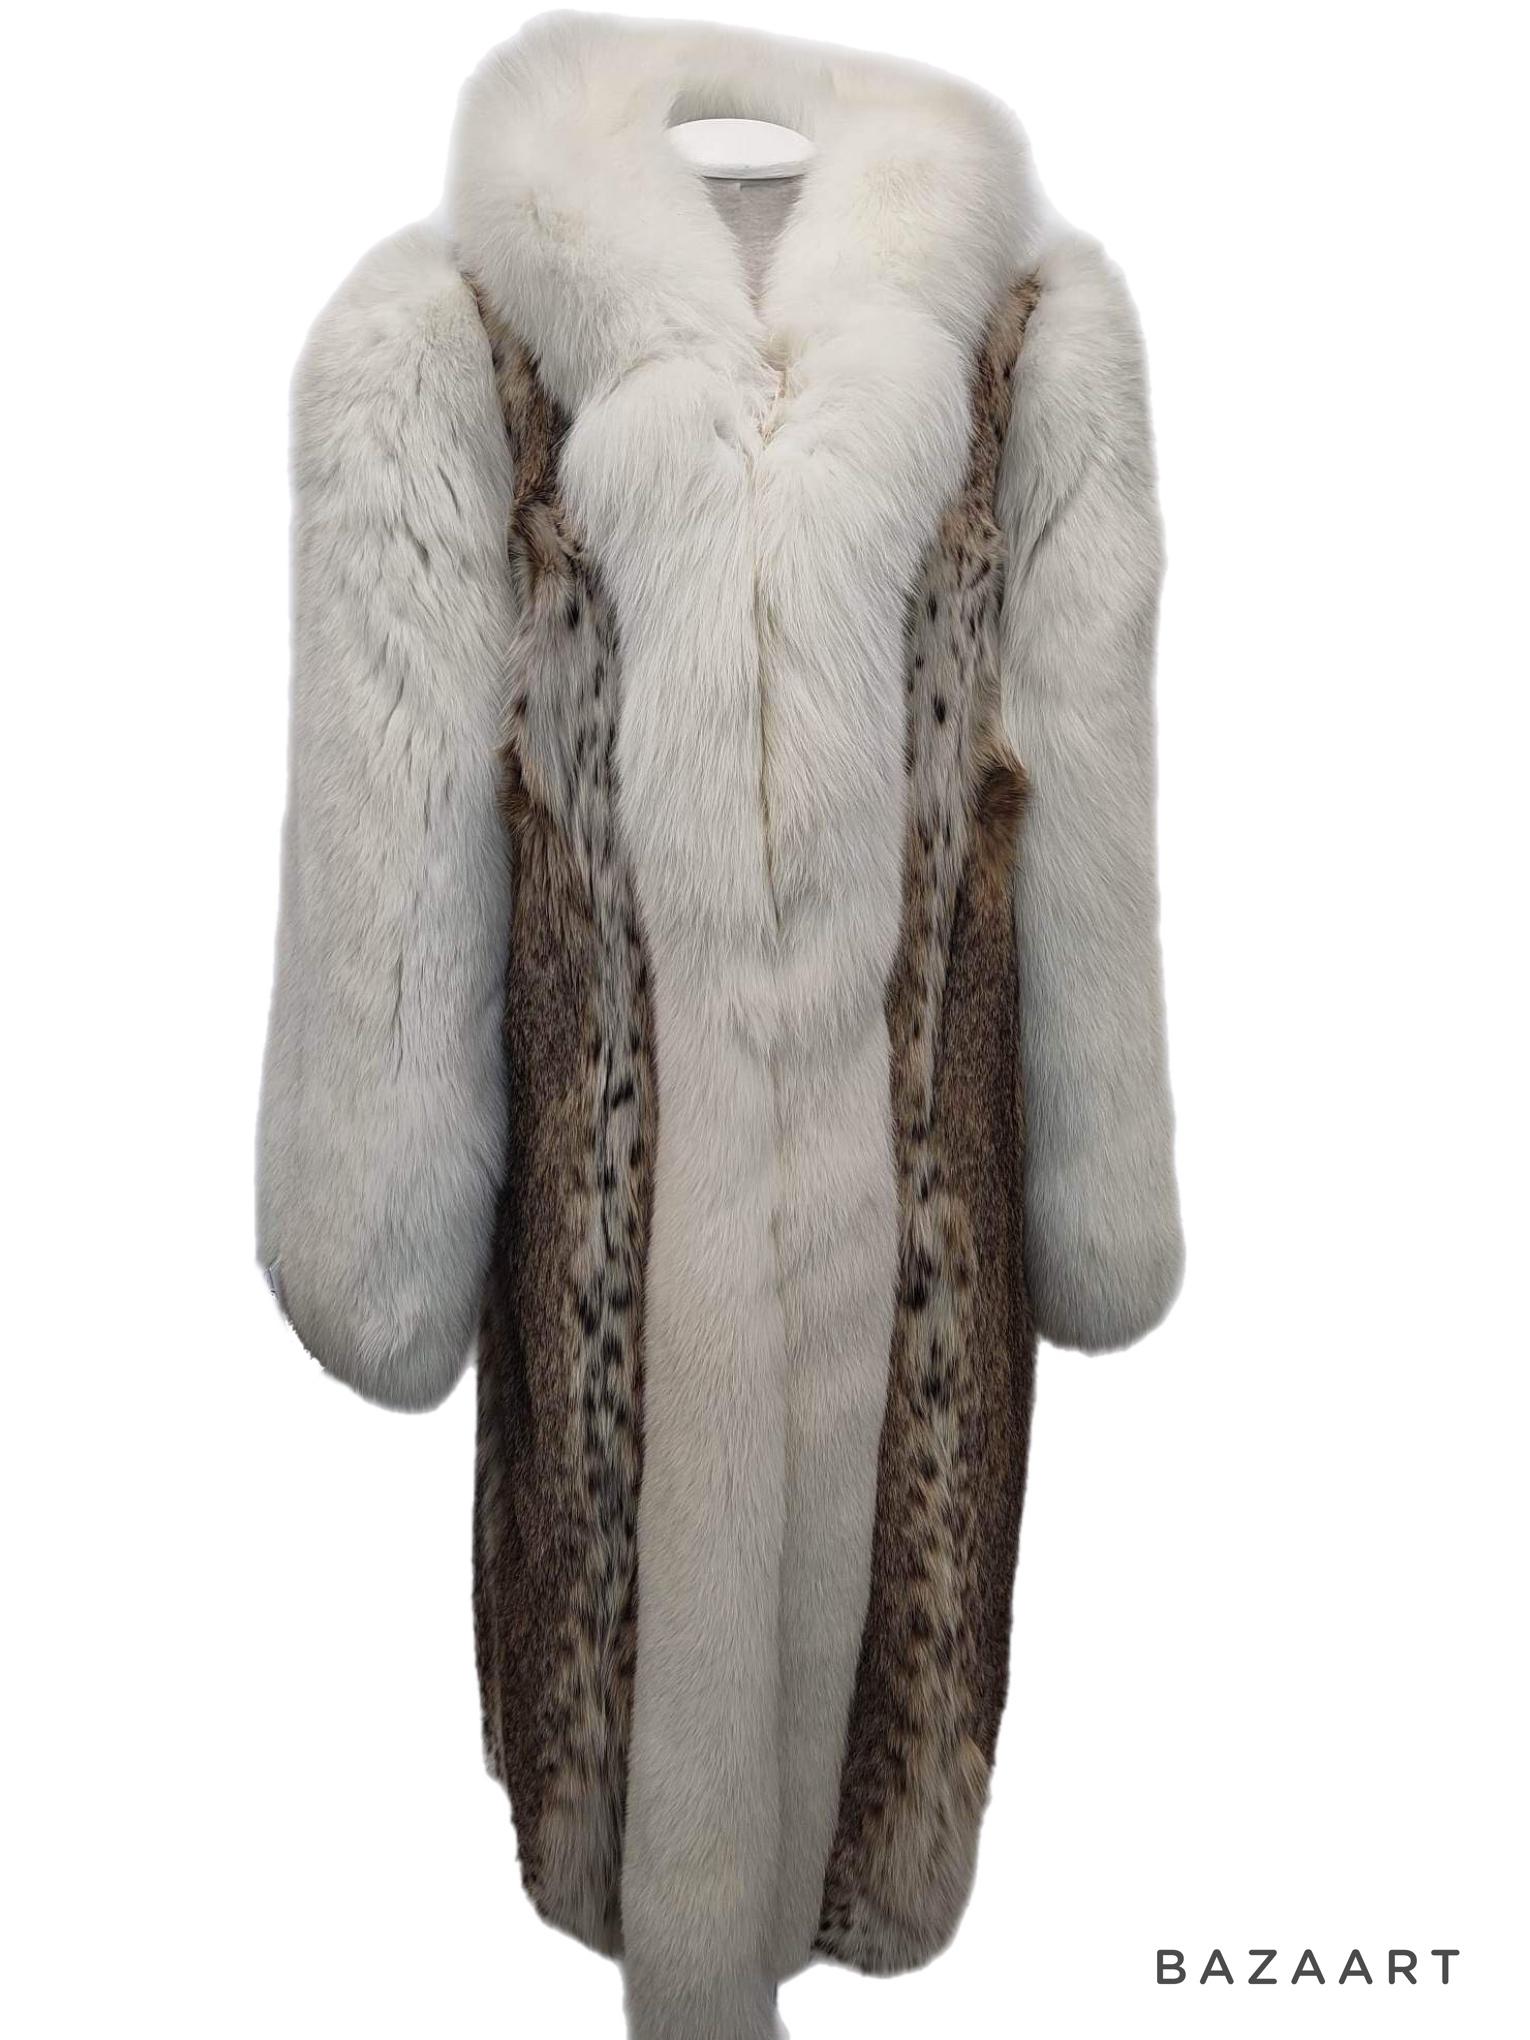 DESCRIPTION : Manteau de fourrure de lynx canadien neuf, taille 14 L

Col tailleur, manches droites, peaux souples, belle fourrure fraîche, fermoirs européens allemands pour la fermeture, deux poches fendues, belles grandes peaux pleines en état